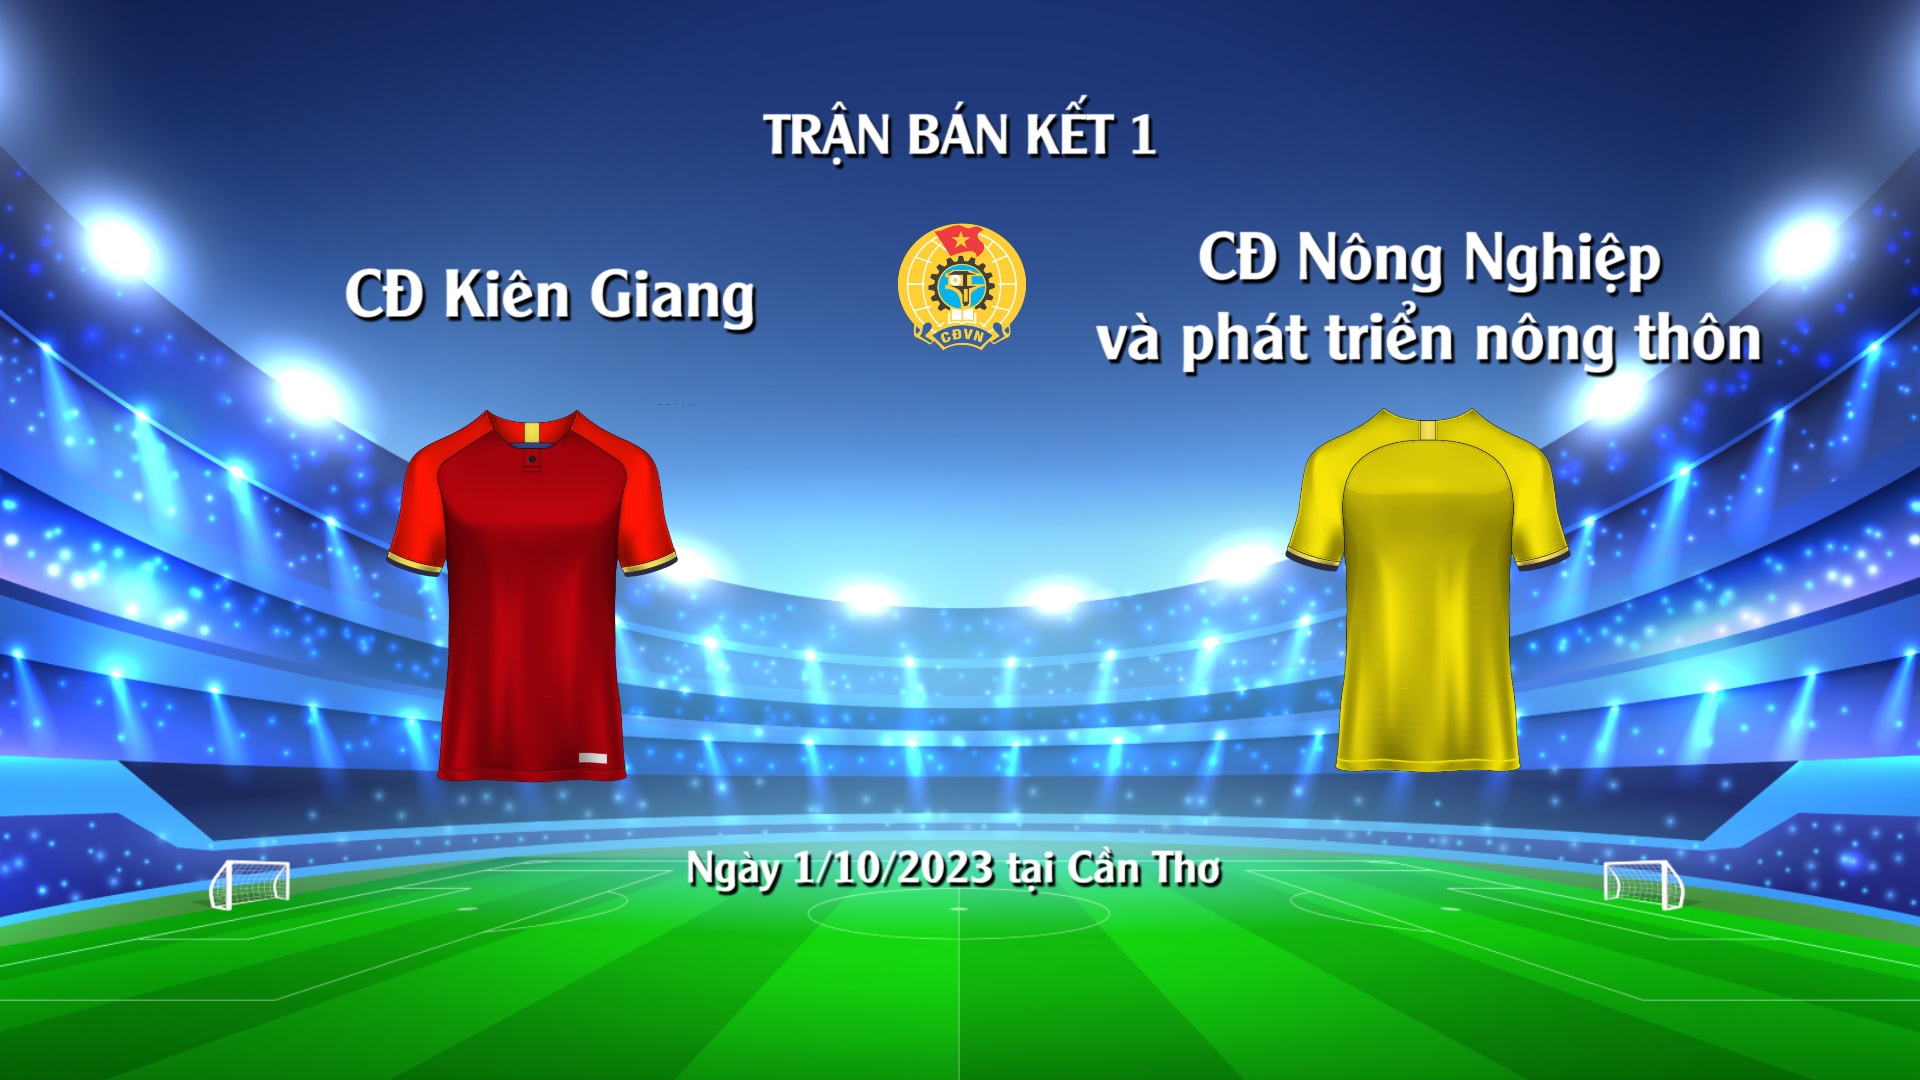 Trận Bán kết 1 - Giải bóng đá công nhân toàn quốc: Công đoàn Kiên Giang - Công đoàn NN&PTNT